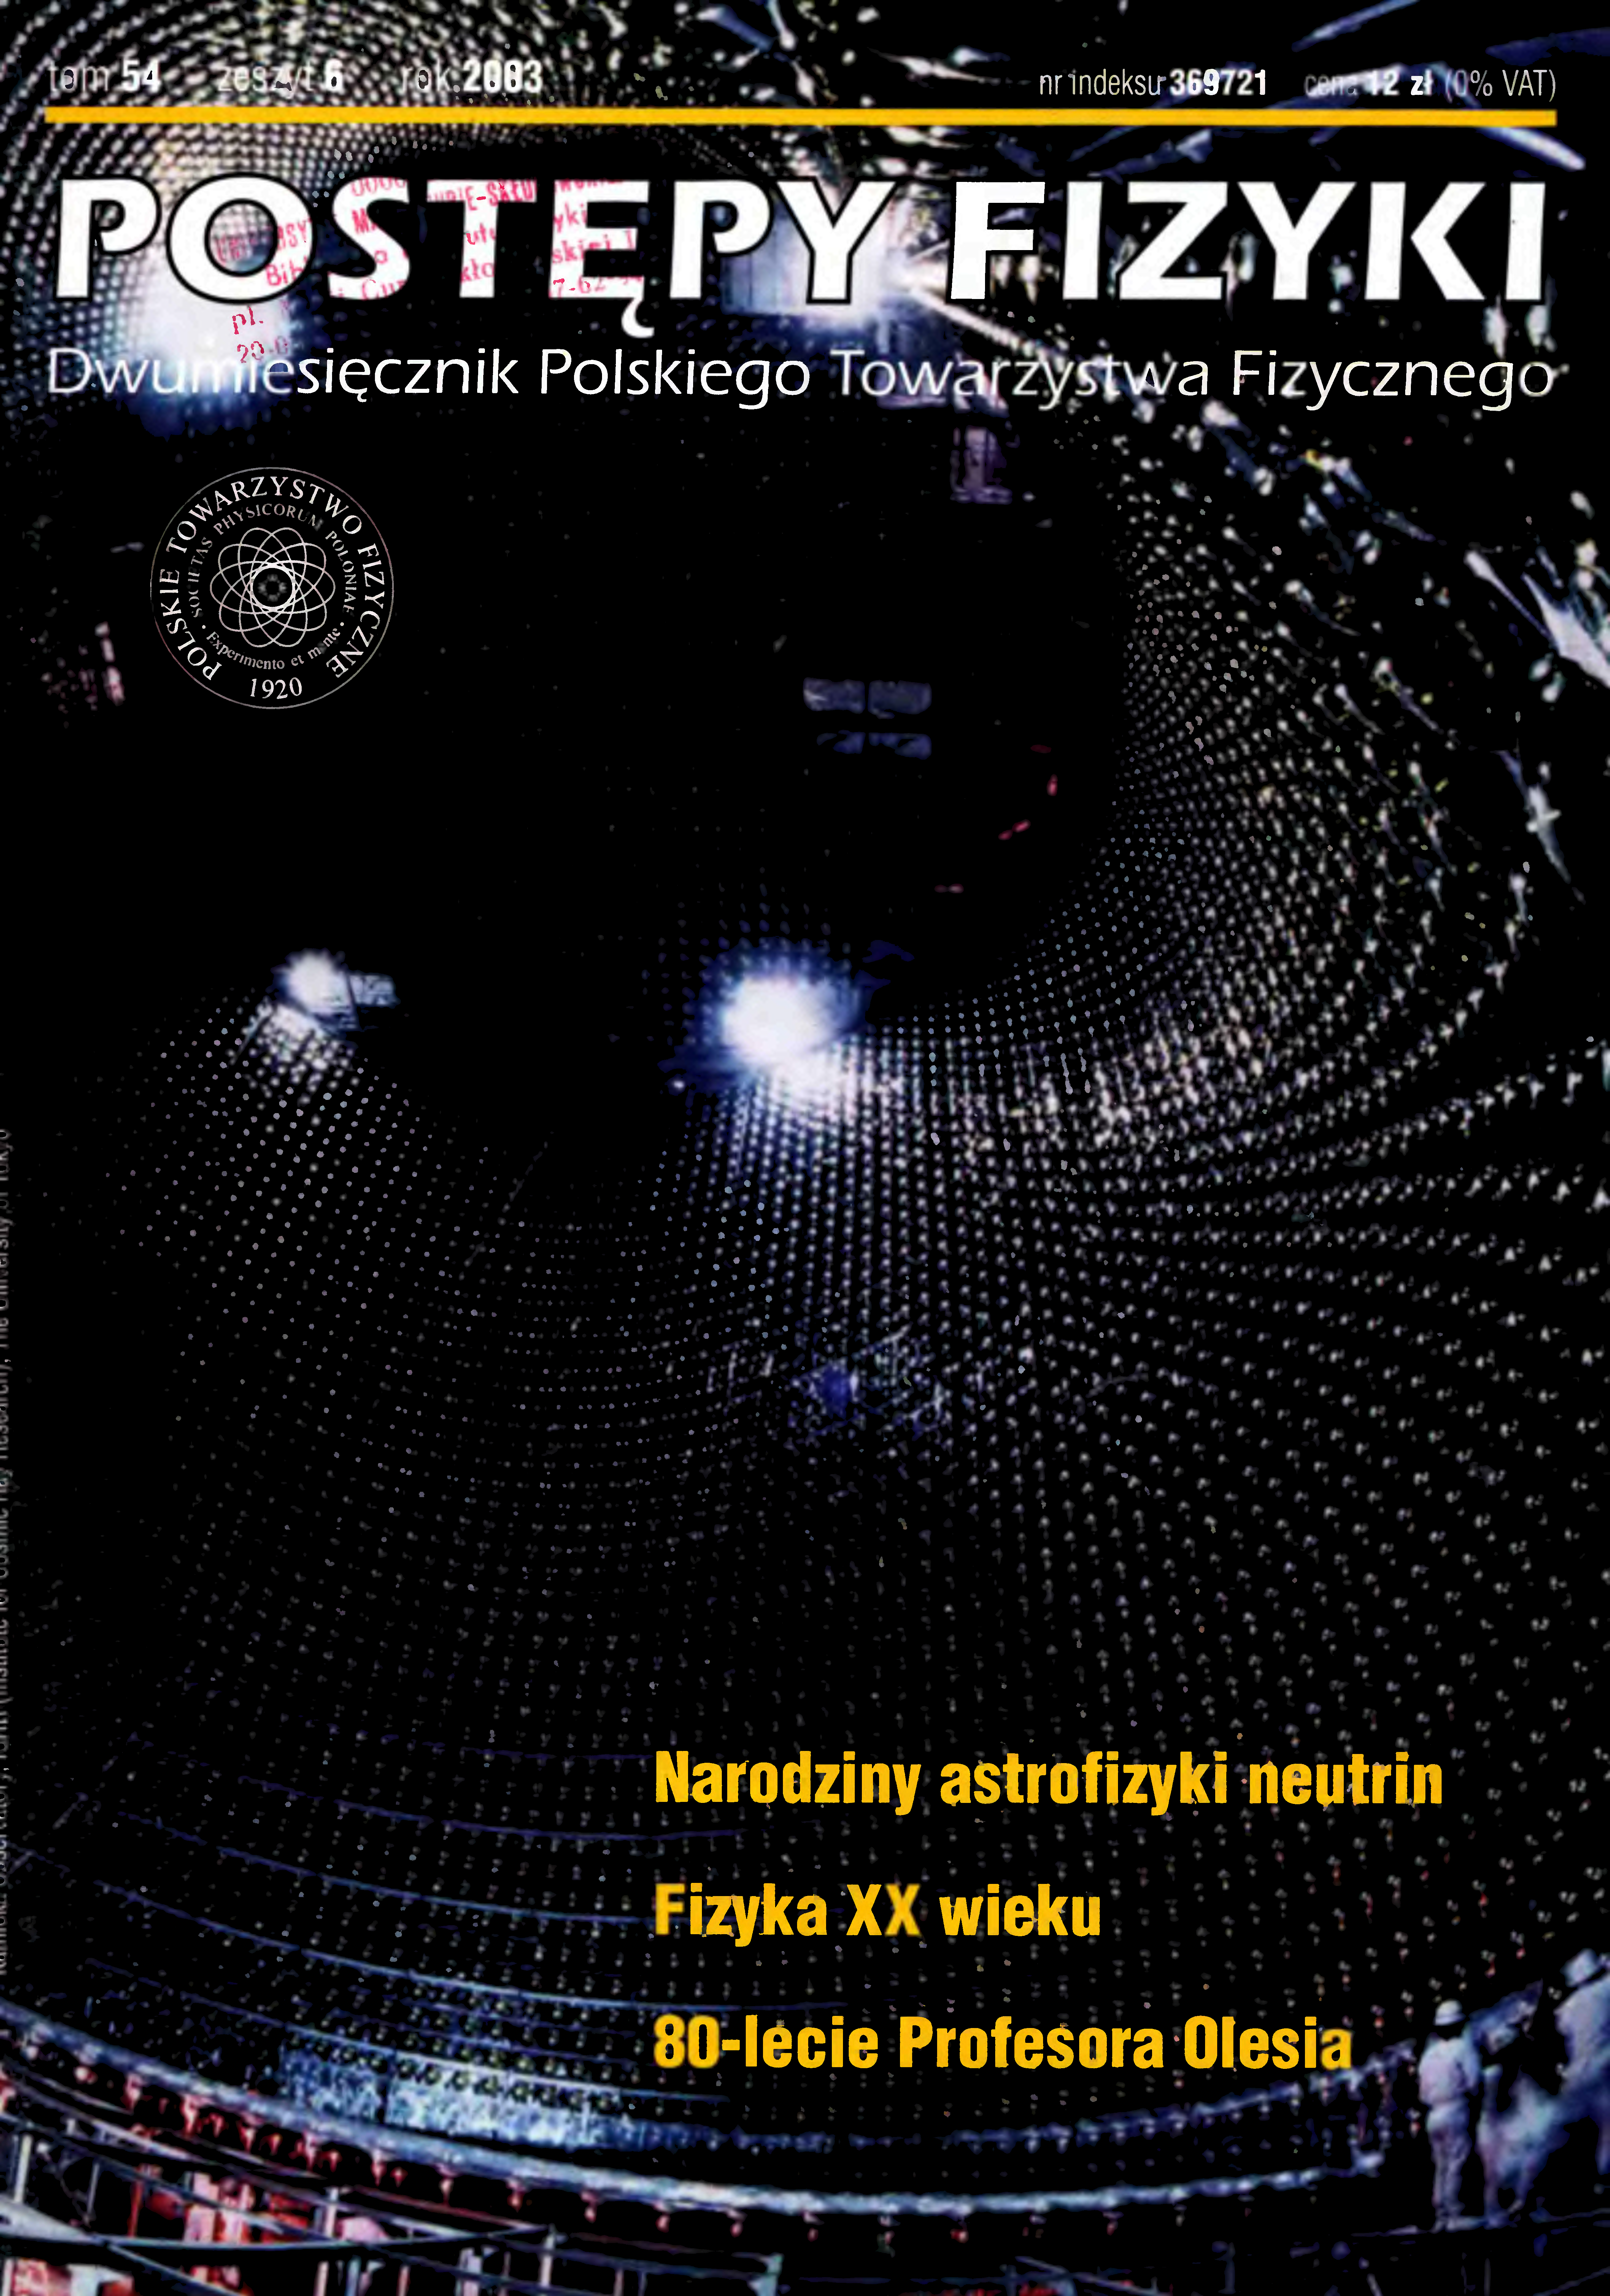 Postępy Fizyki 54 (6) 2003